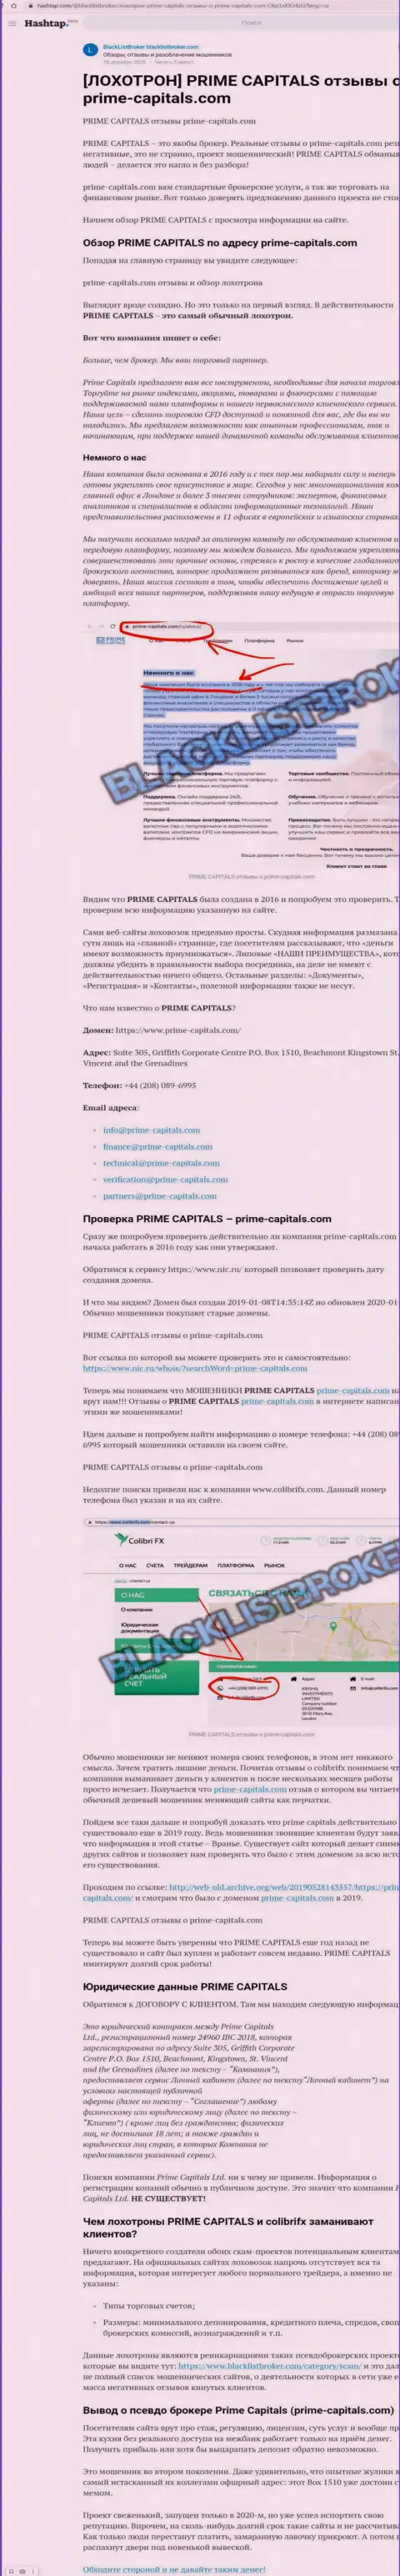 Prime Capitals - это наглый обман реальных клиентов (обзорная статья незаконных манипуляций)